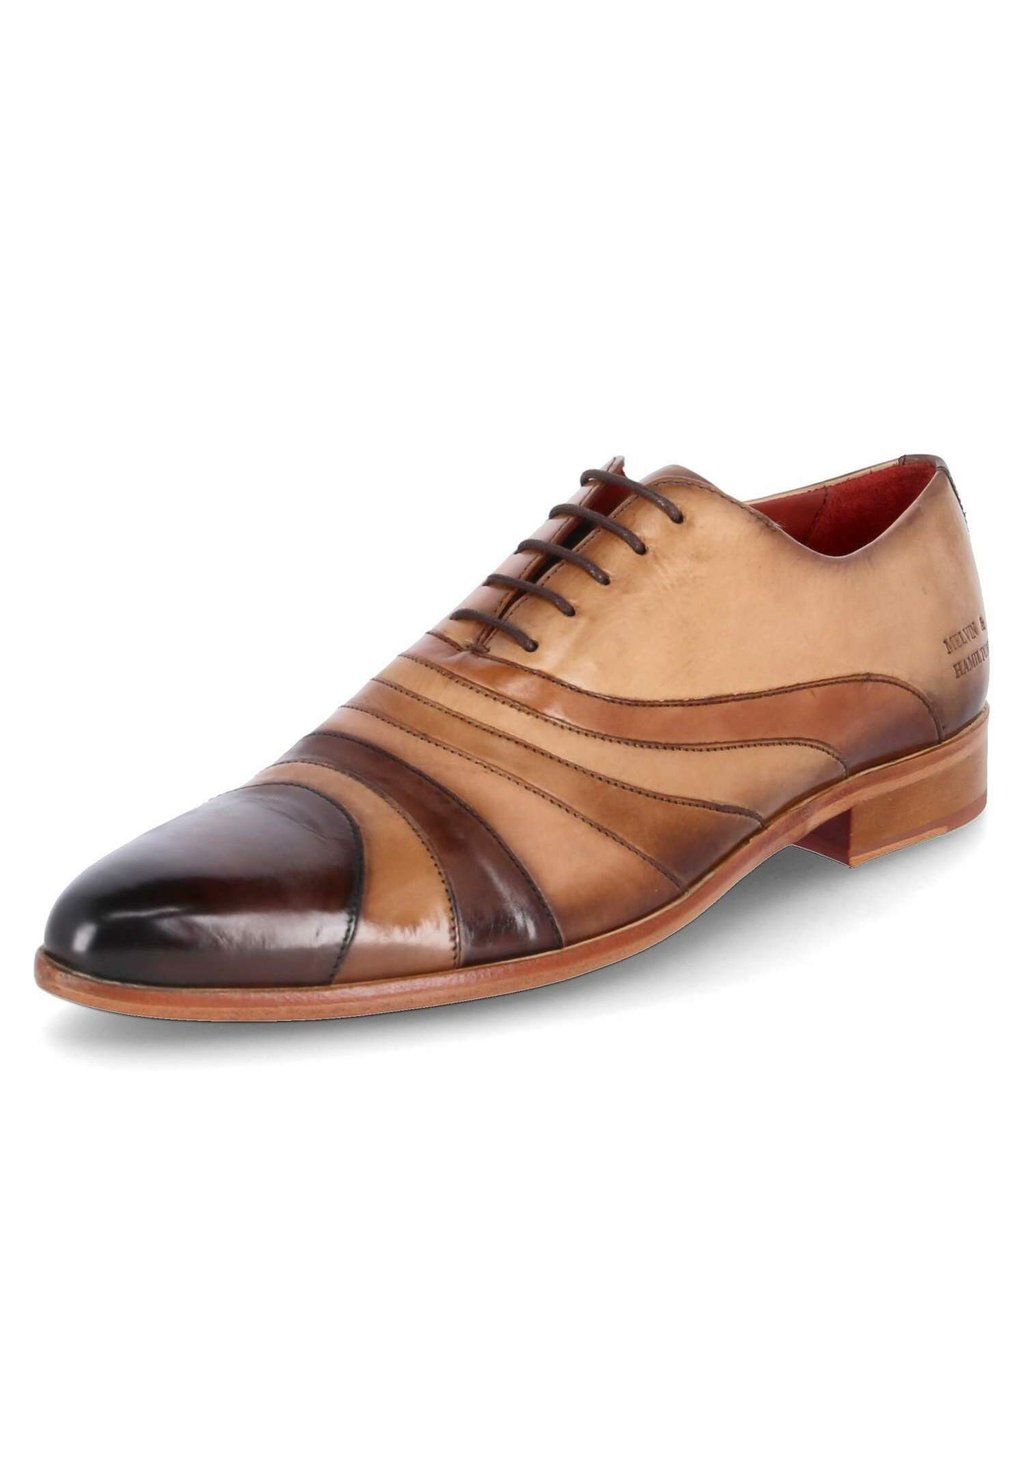 Деловые туфли на шнуровке TONI43 Melvin & Hamilton, цвет braun туфли на шнуровке betty melvin